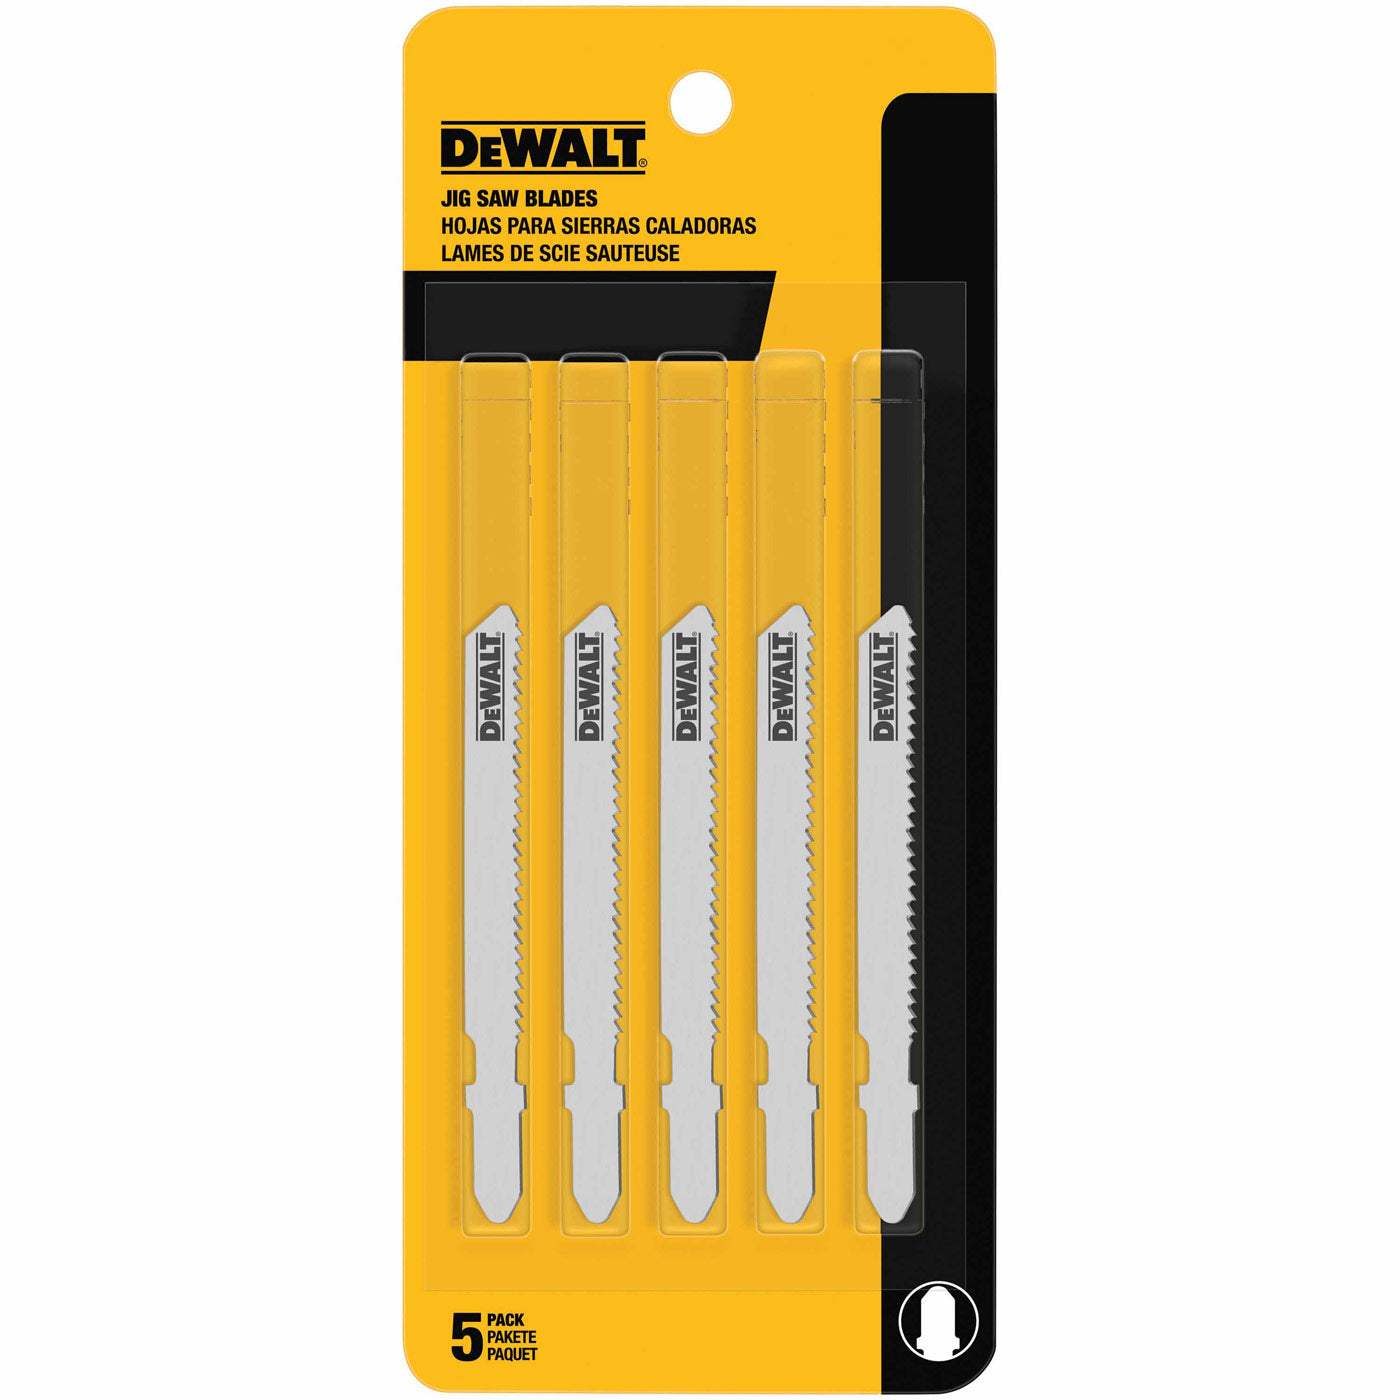 DeWalt DW3776-5 3" 24 TPI T-Shank Cobalt Steel Jig Saw Blade, 5 Pack